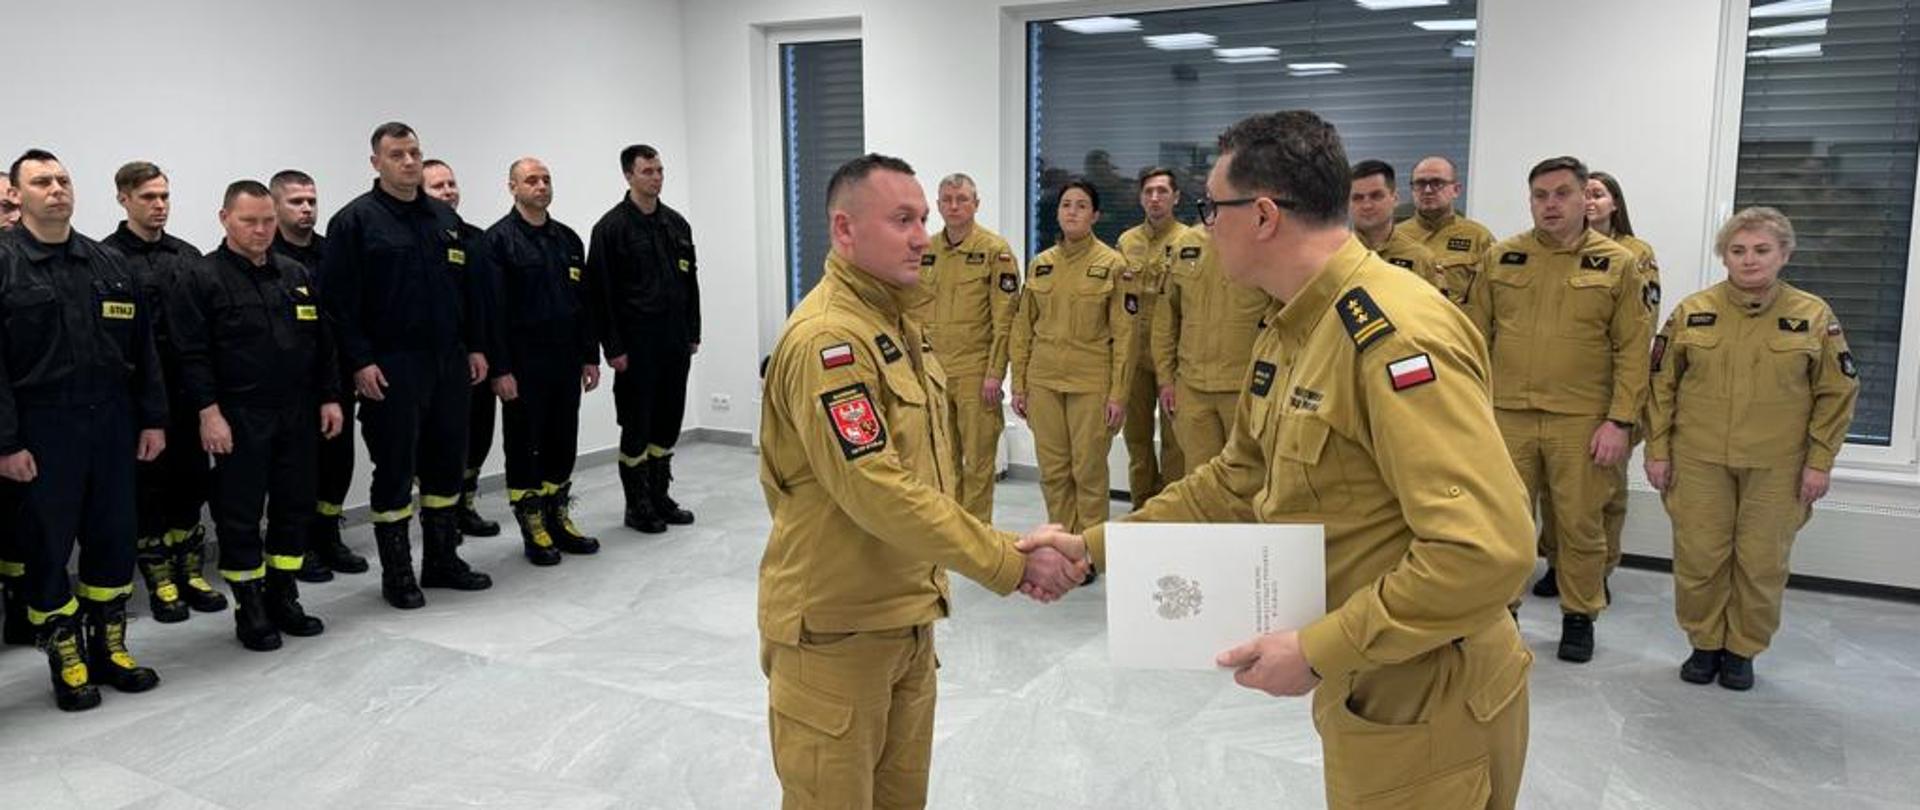 Na sali szkoleniowej stoją w mundurach strażacy. Na środku sali komendant miejski ściska rękę awansowanemu strażakowi i wręcza mu teczkę z dokumentami.